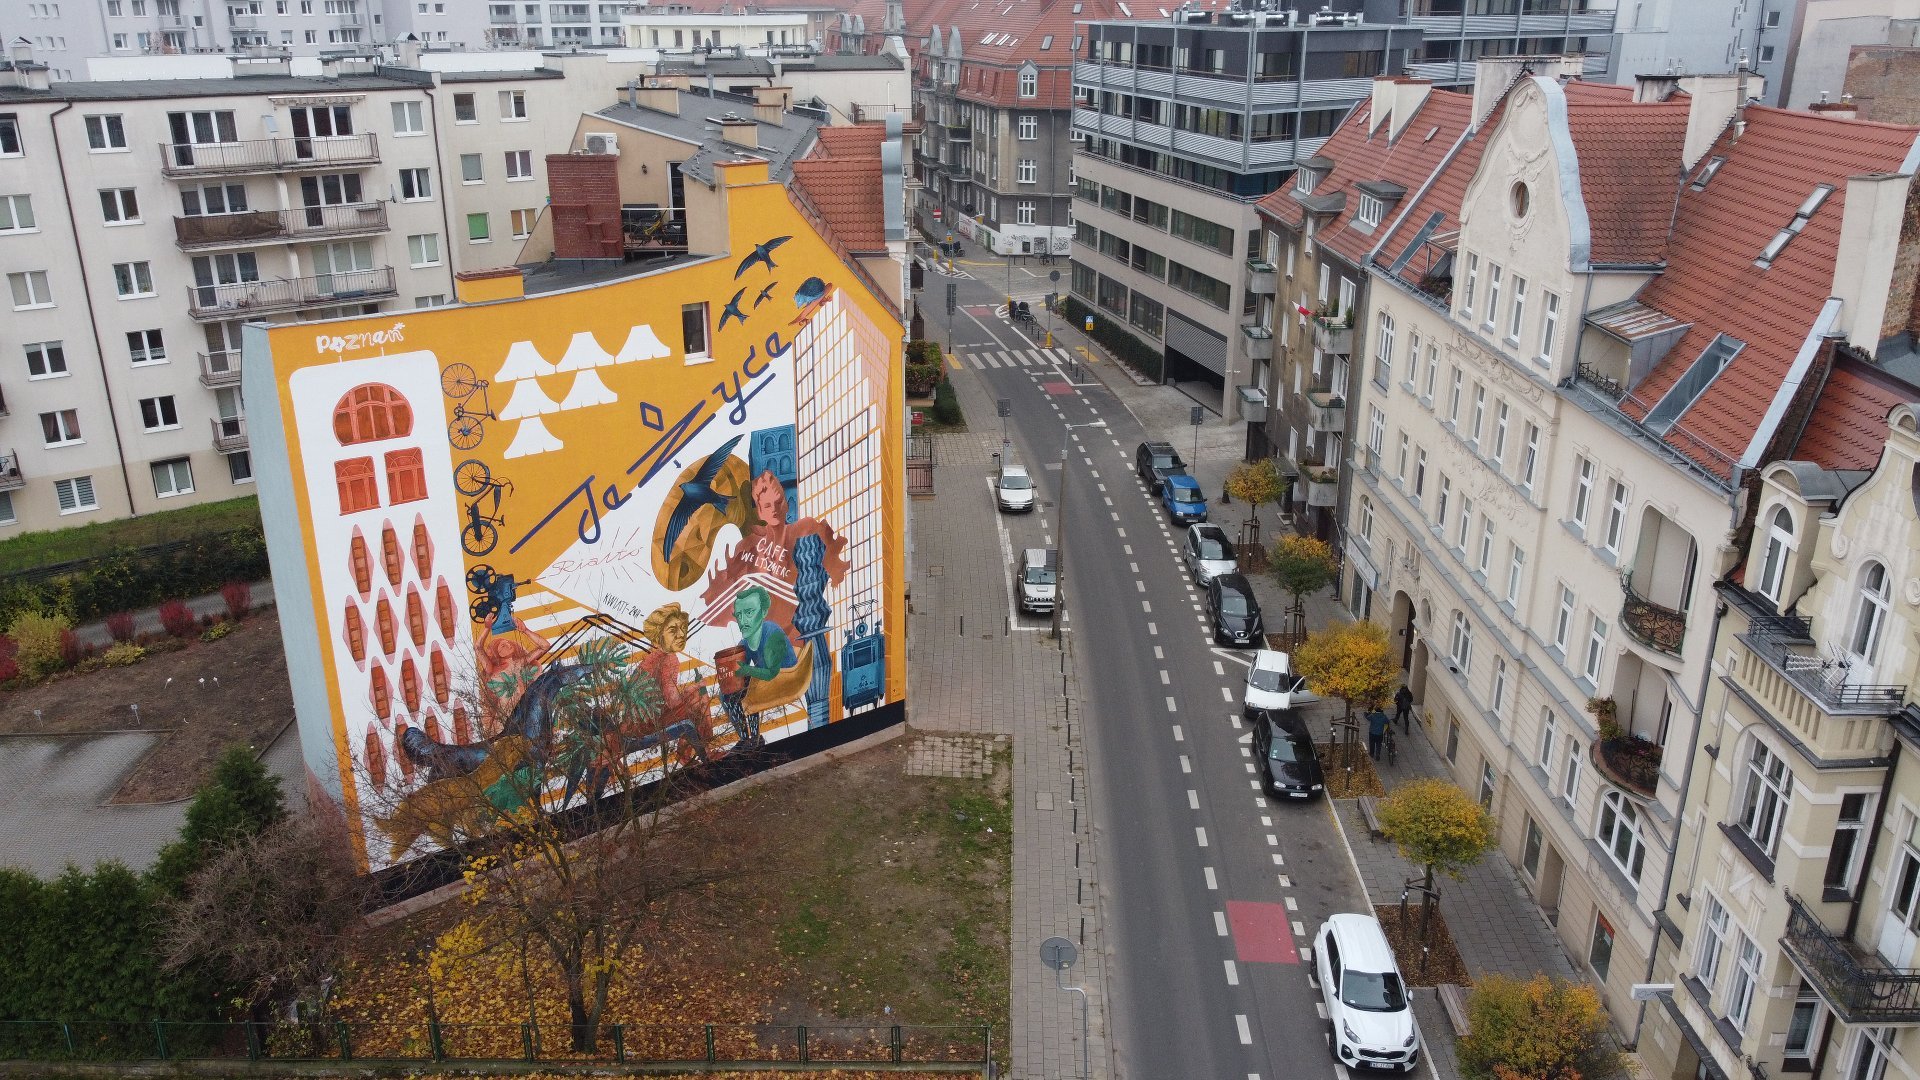 Galeria zdjęć przedstawia nowy mural na Jeżycach. Widać na nim m.in. dwóch poetów Słowackiego i Mickiewicza. Obok znajduje się ulica z samochodami.